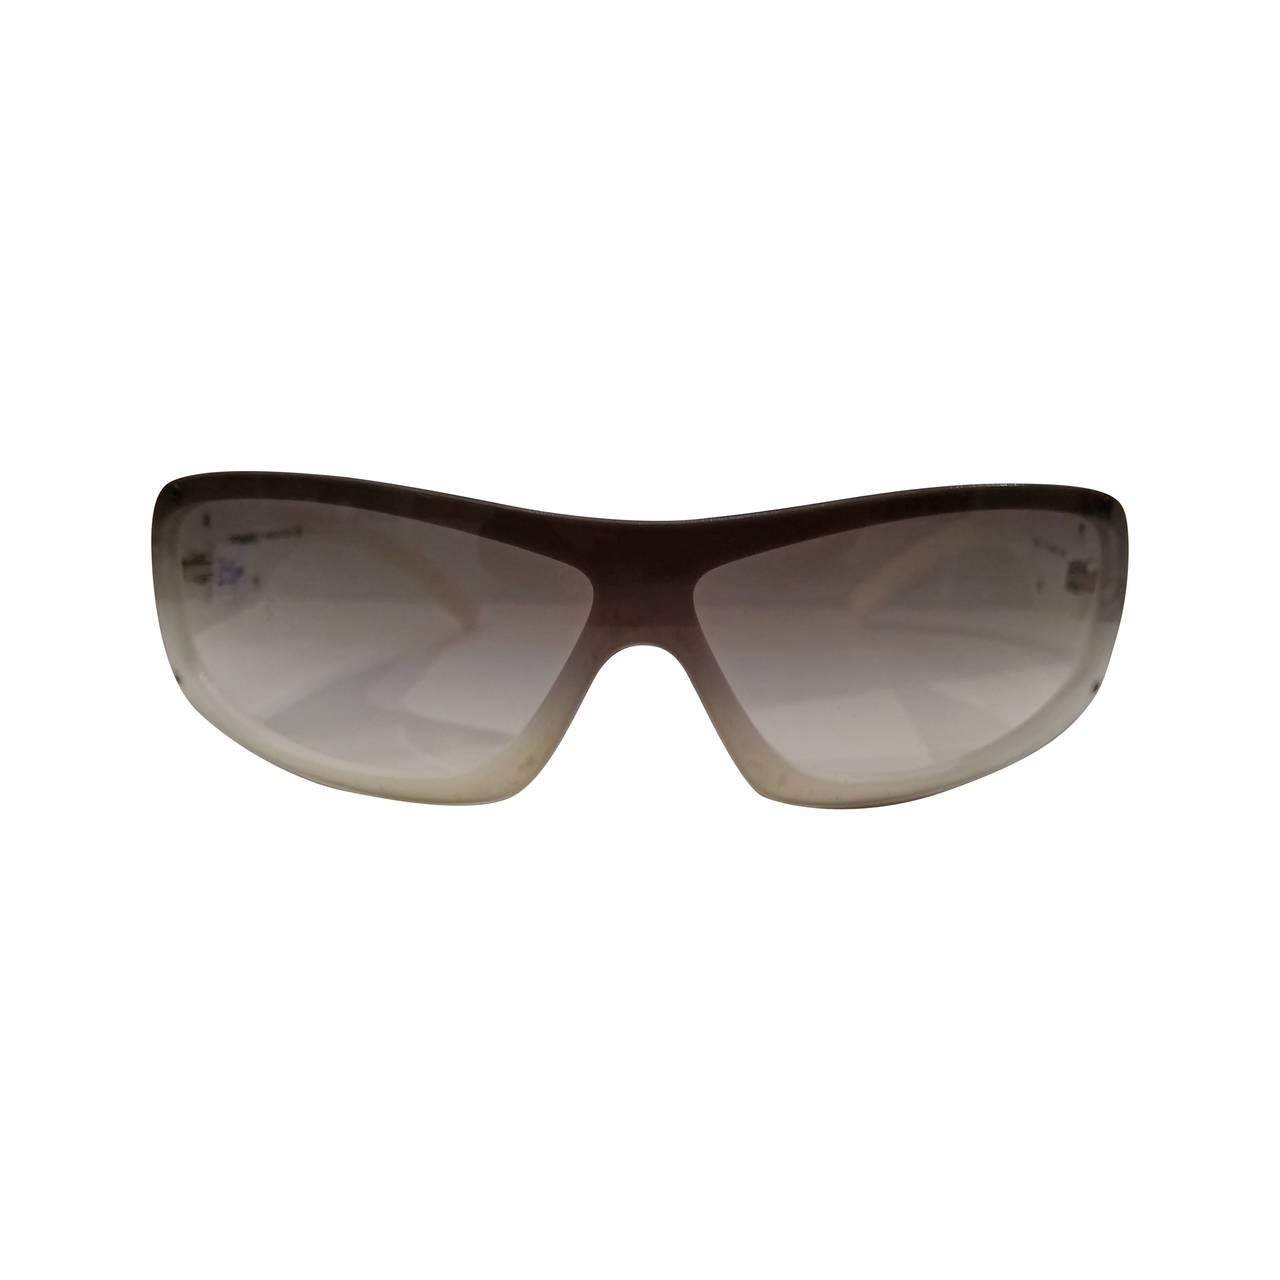 1980s Chanel black & white sunglasses